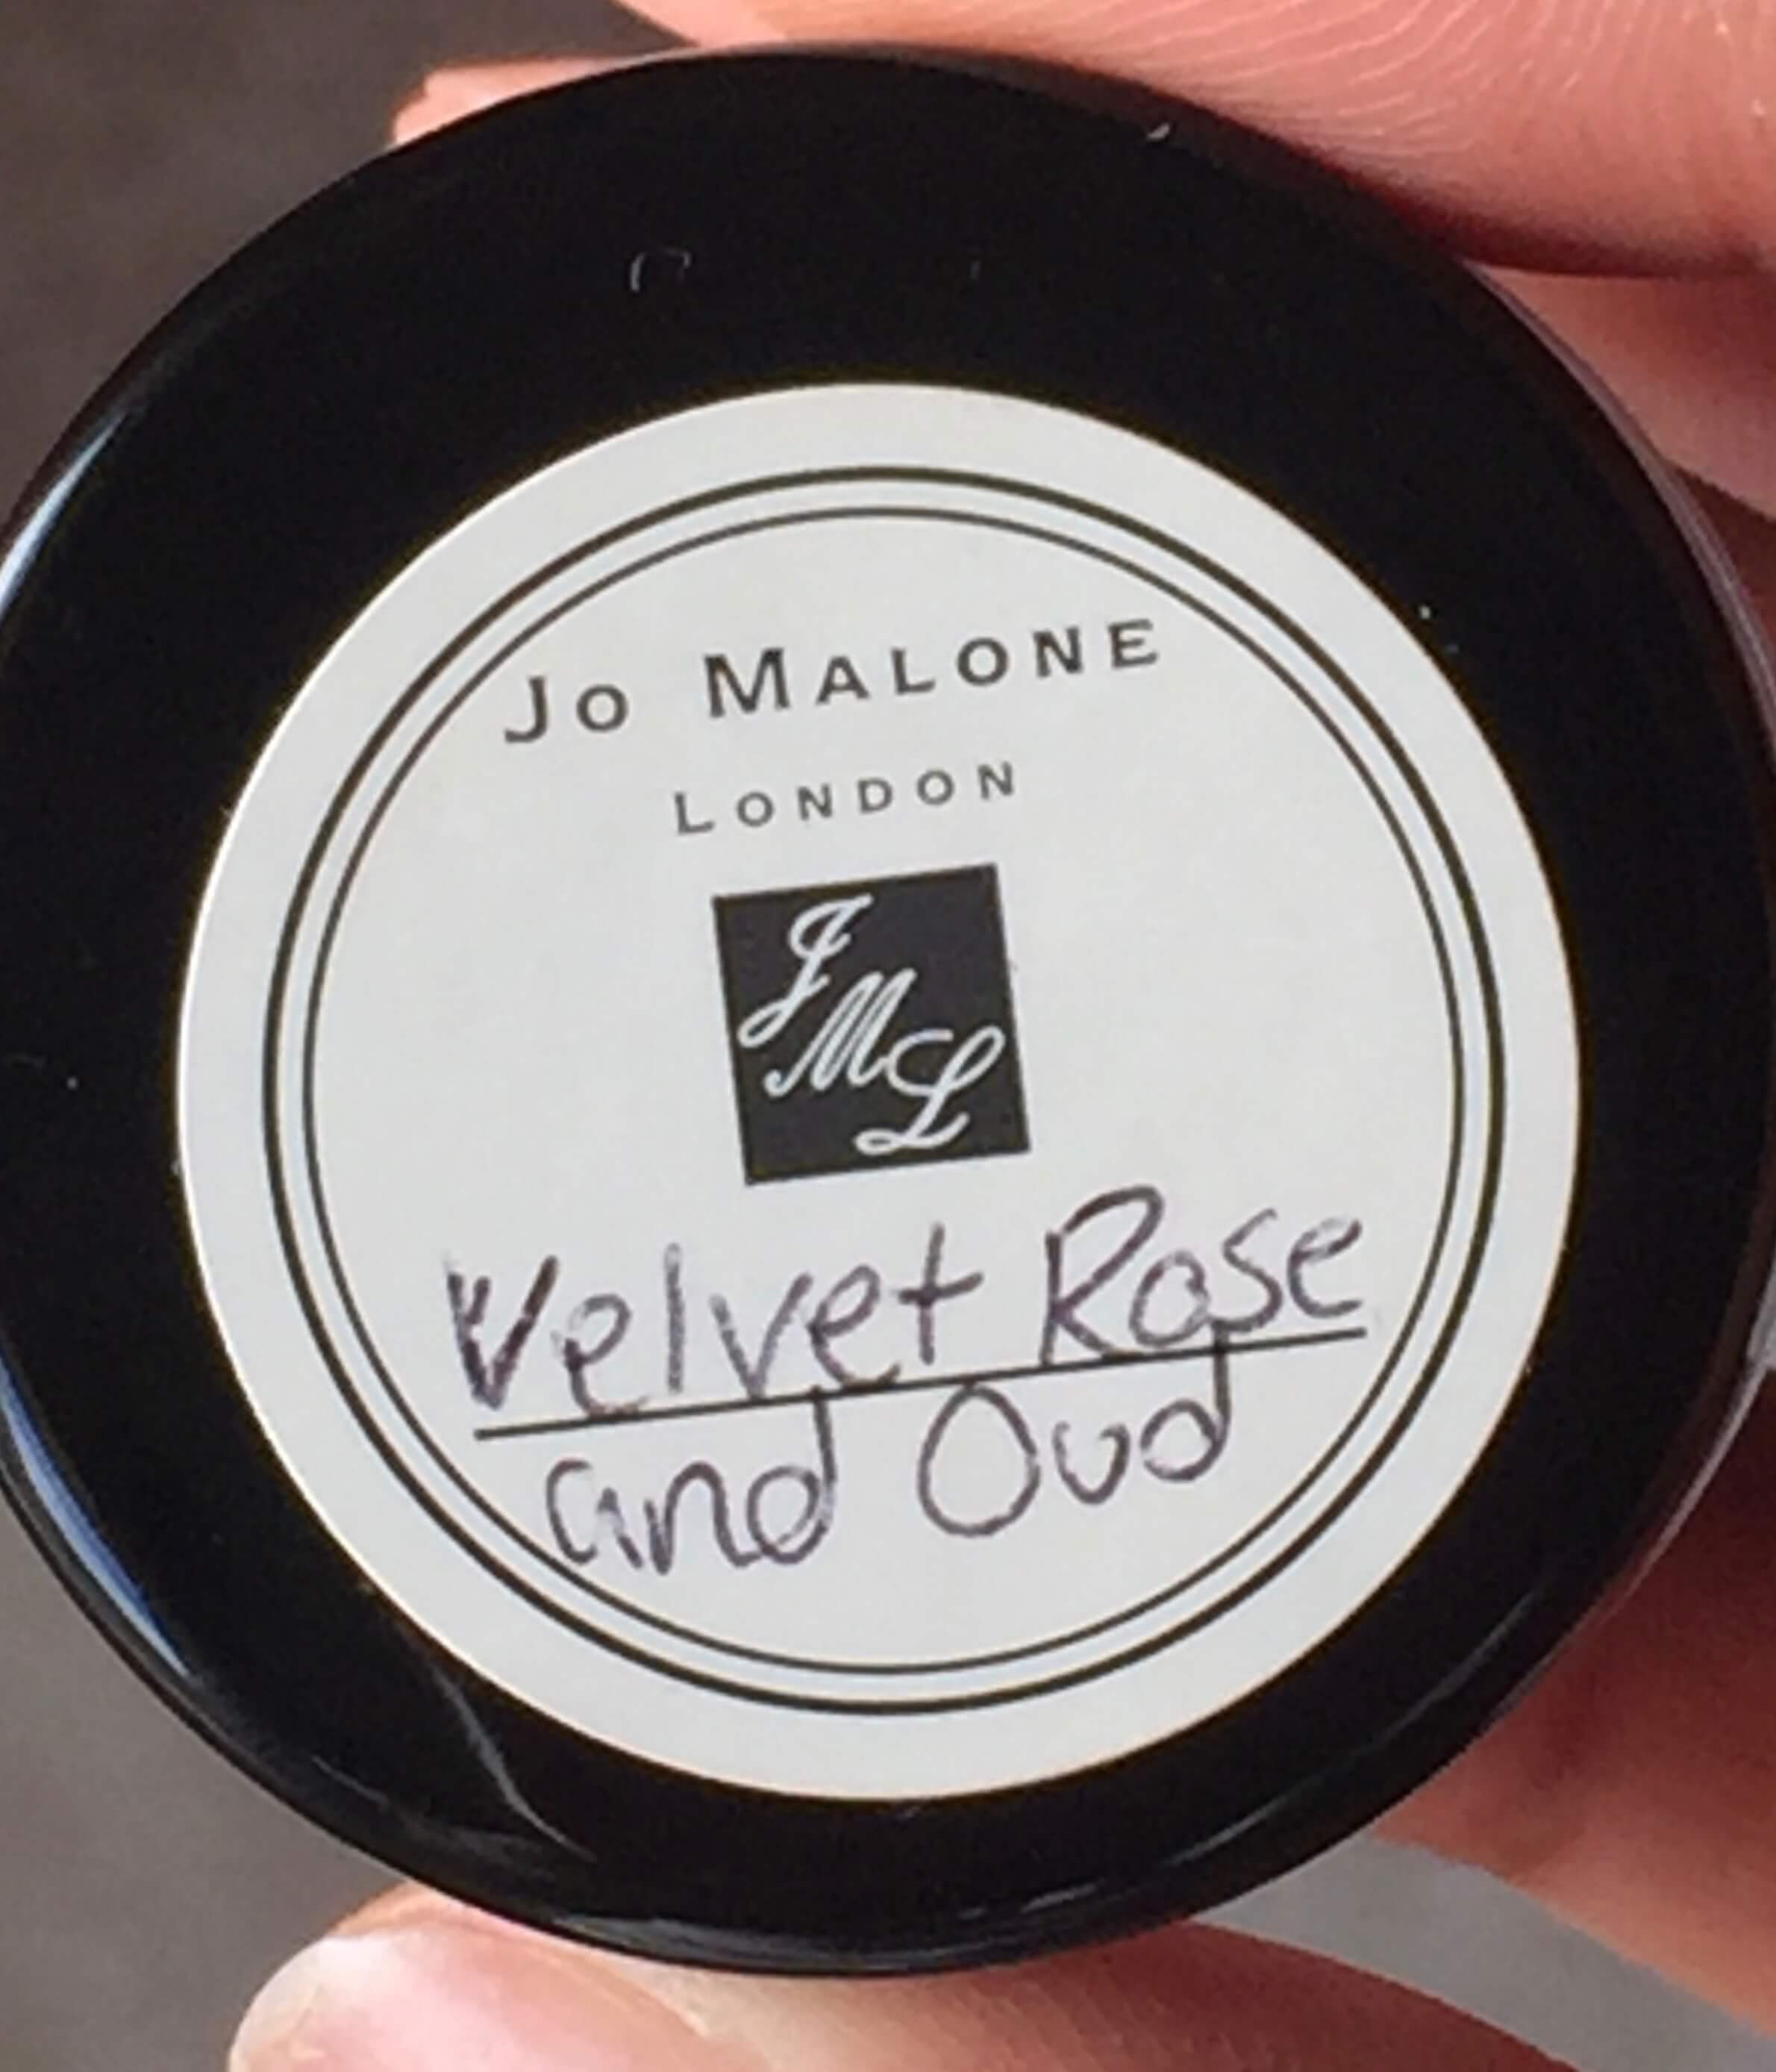 Jo Malone Velvet Rose & Oud Review